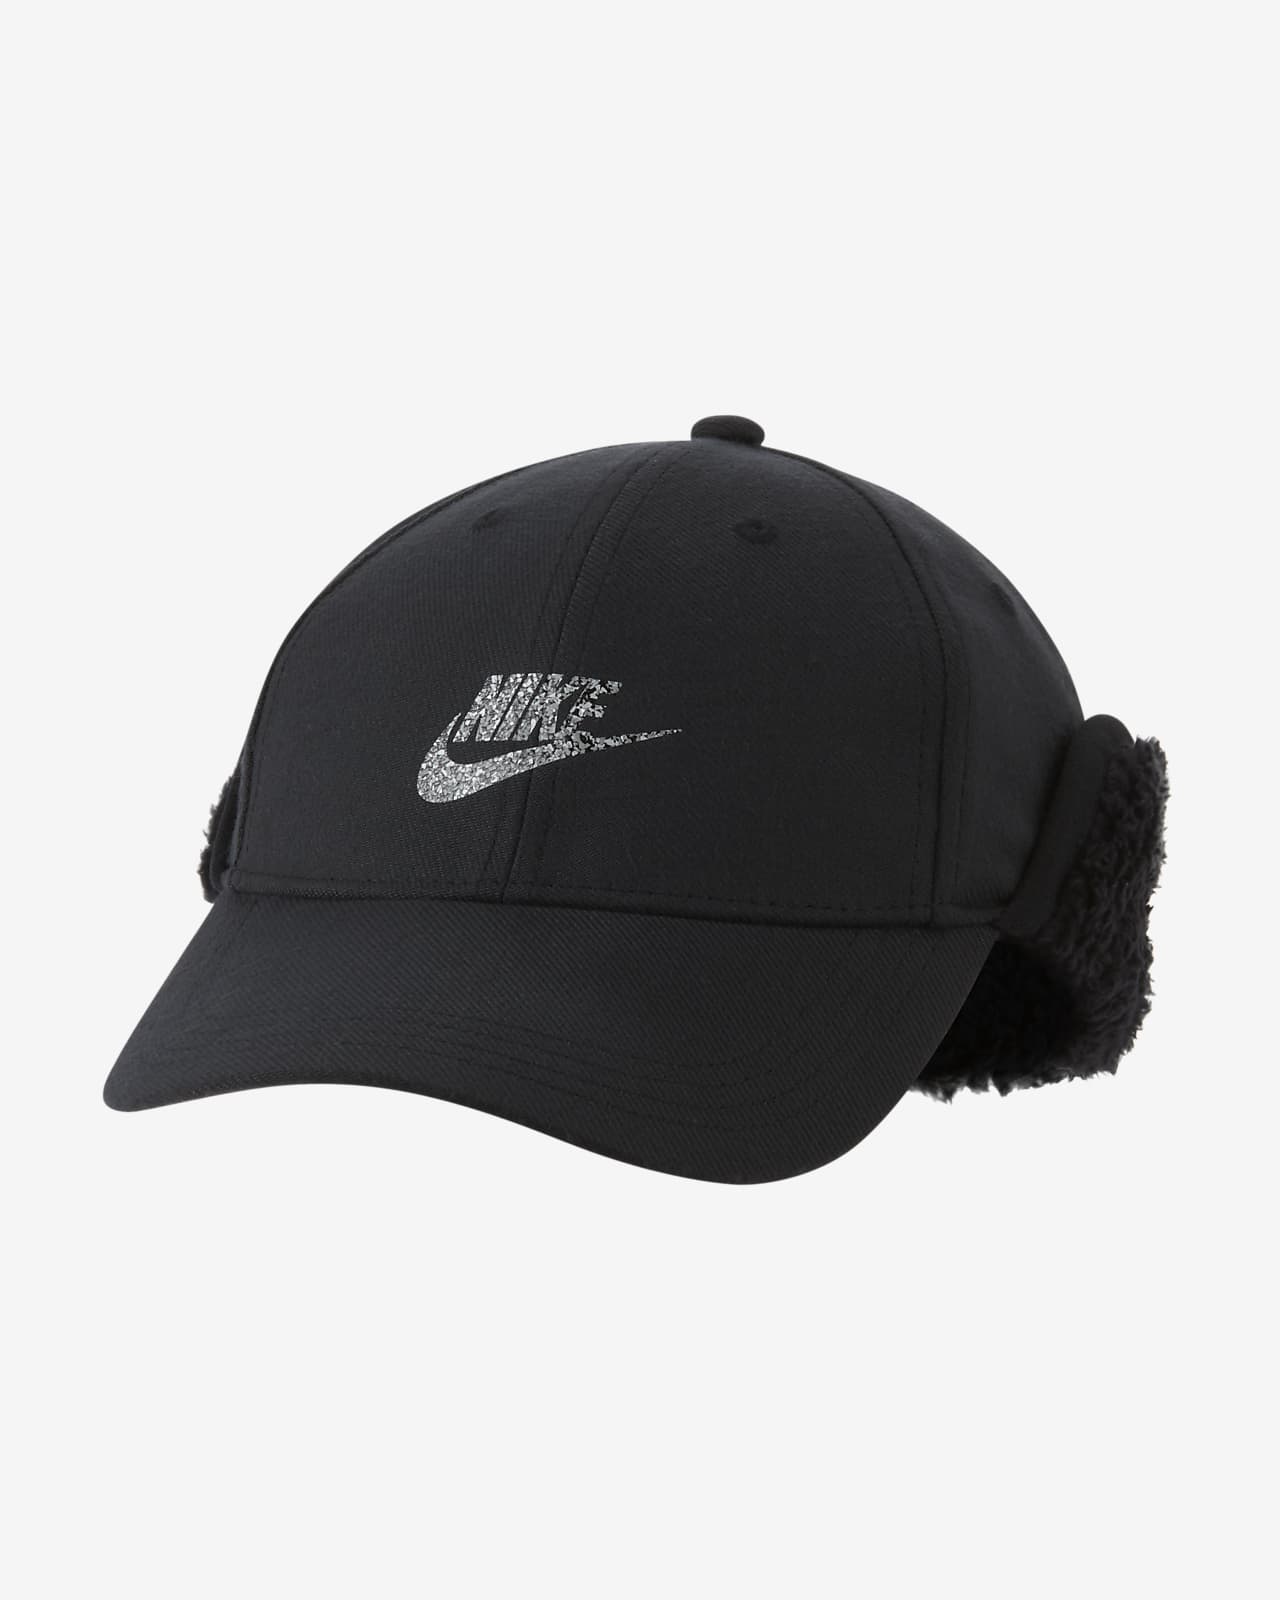 Nike Winterized Older Kids' Cap